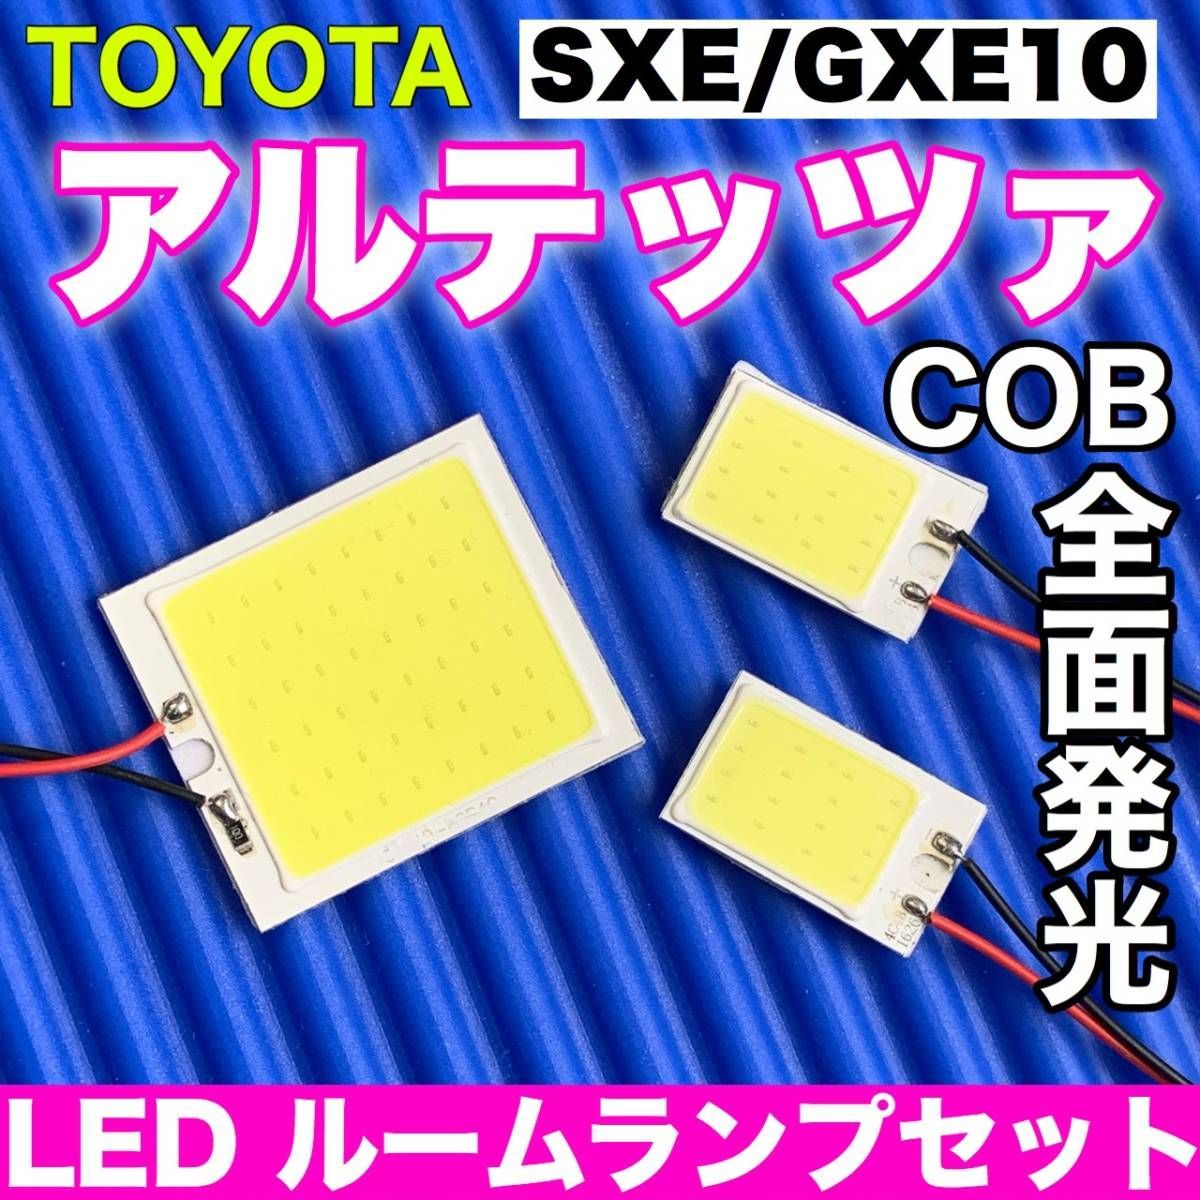 トヨタ アルテッツァ SXE GXE10 T10 LED 室内灯 超爆光 COB 全面発光 パネルタイプ ルームランプ 3個セット ホワイト 車検対応